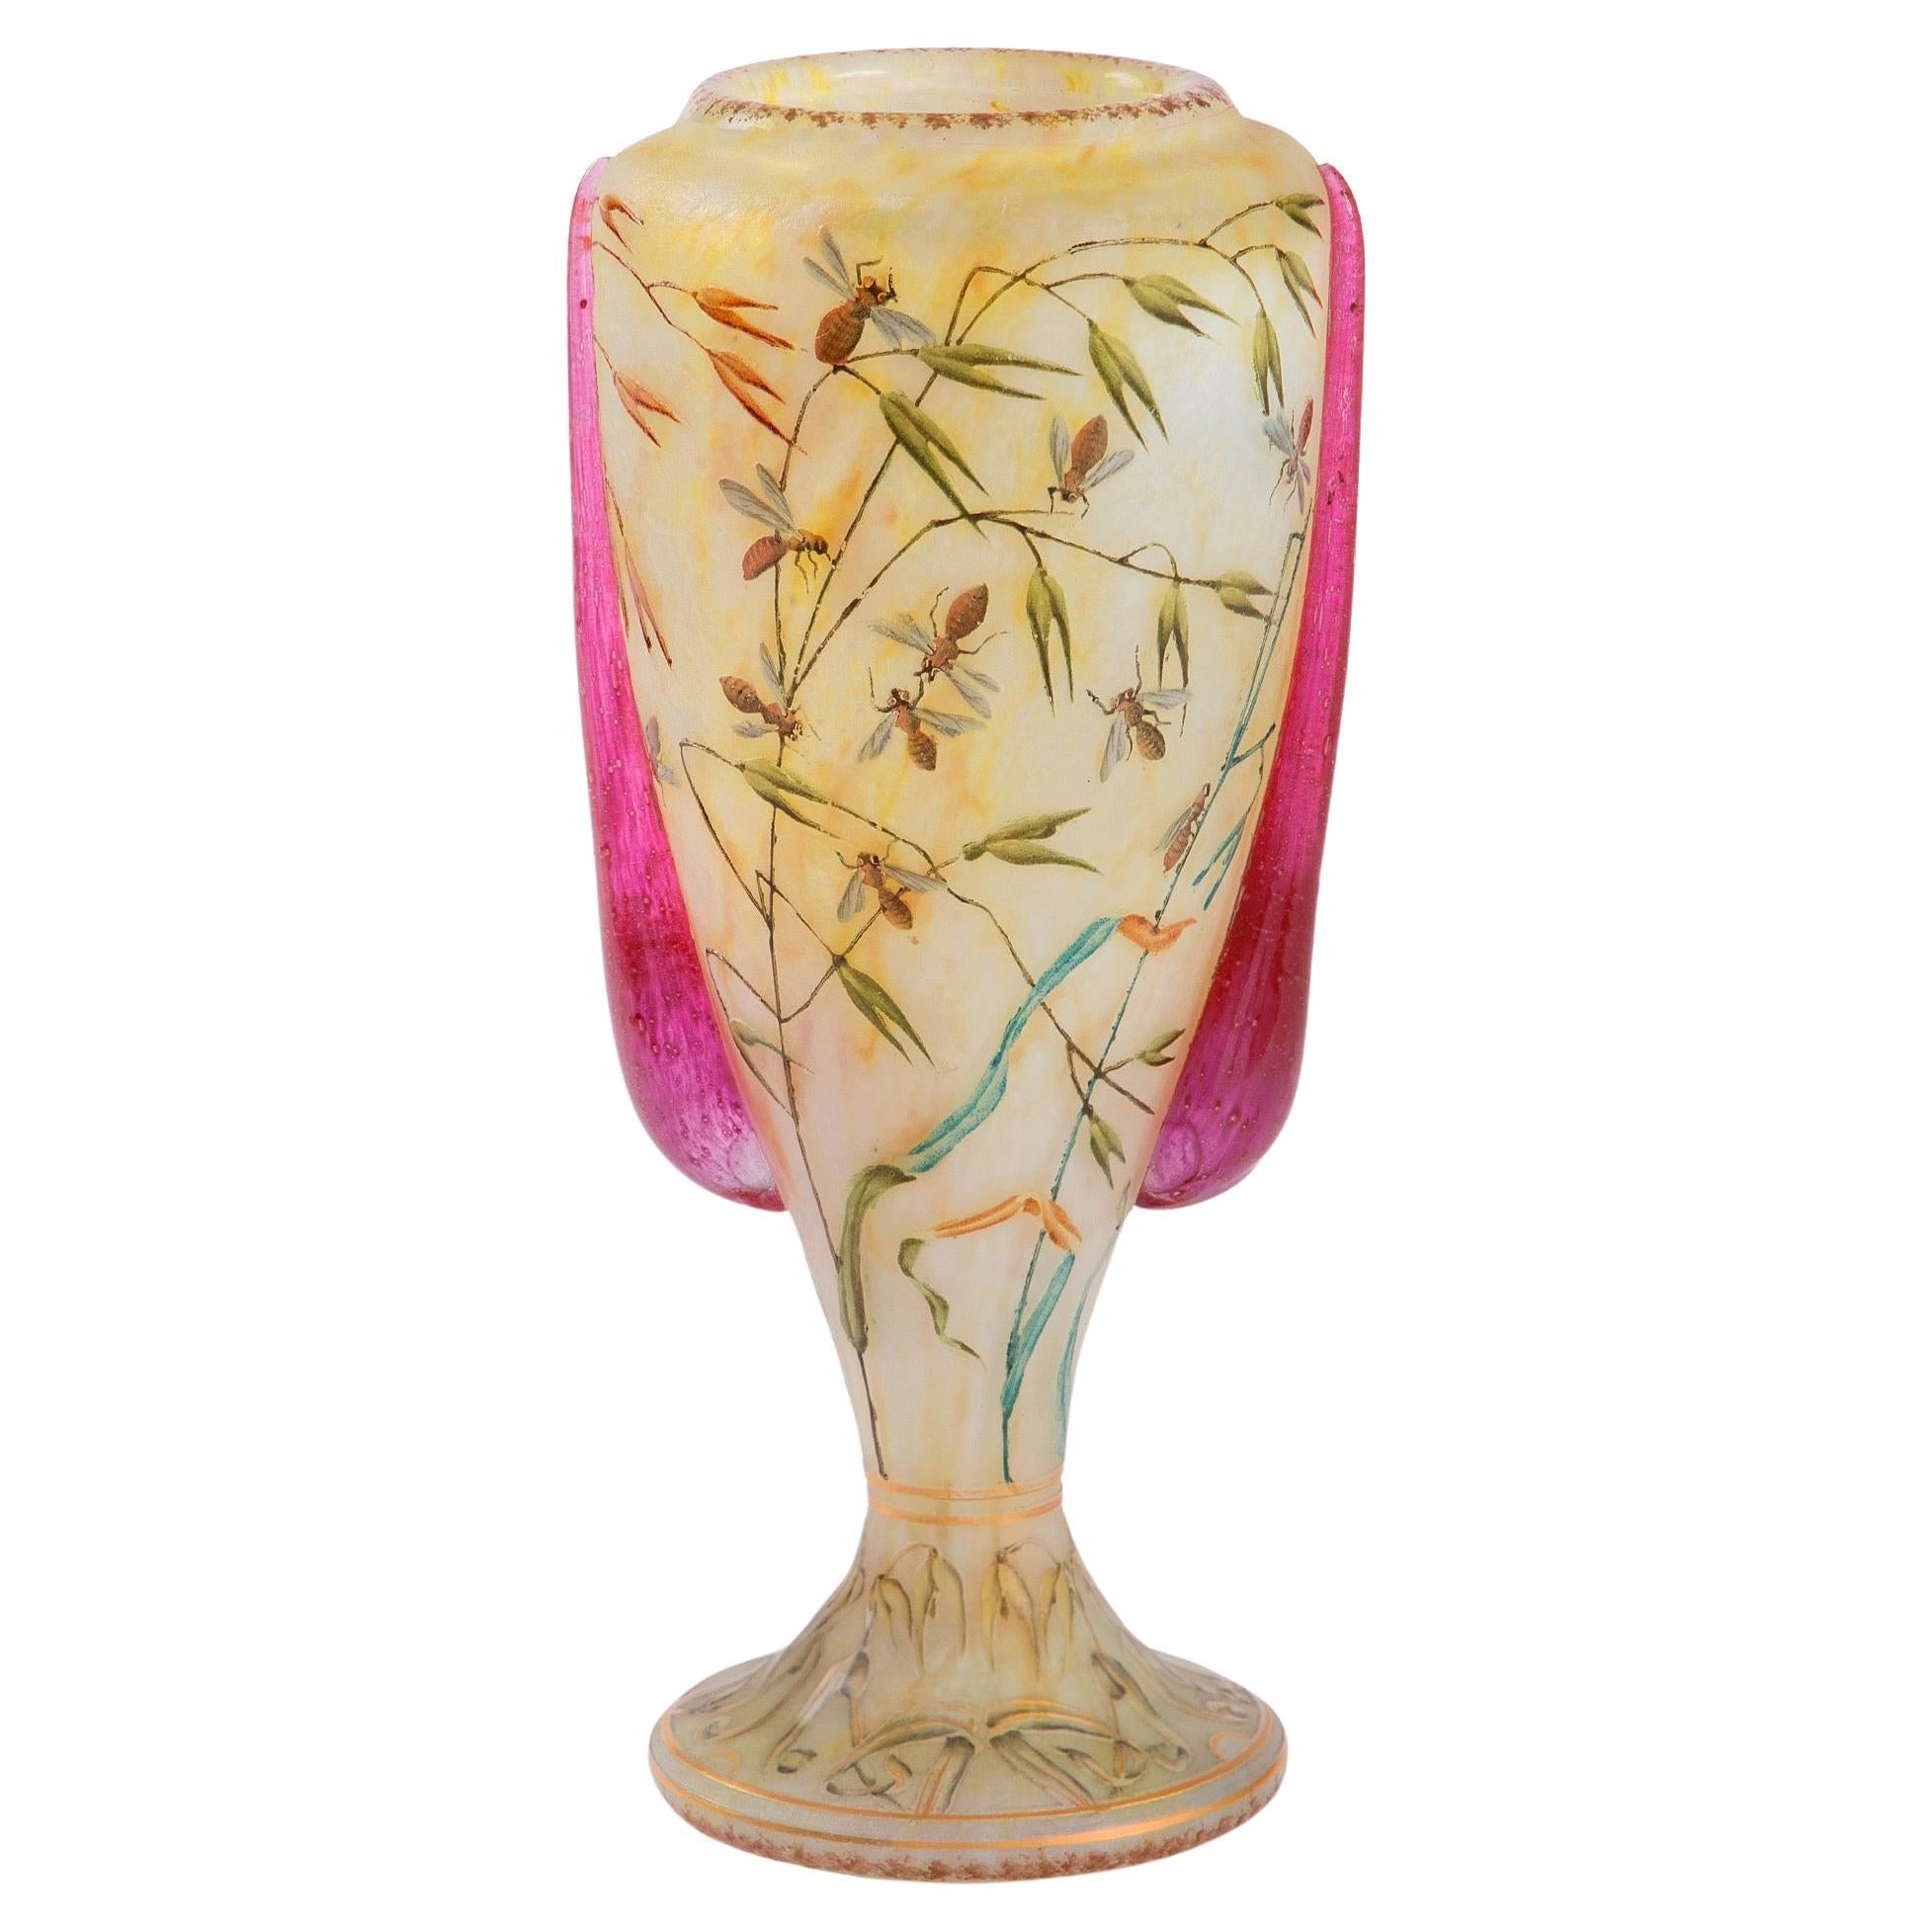 Daum Nancy "Avoine et abeilles" Vase For Sale